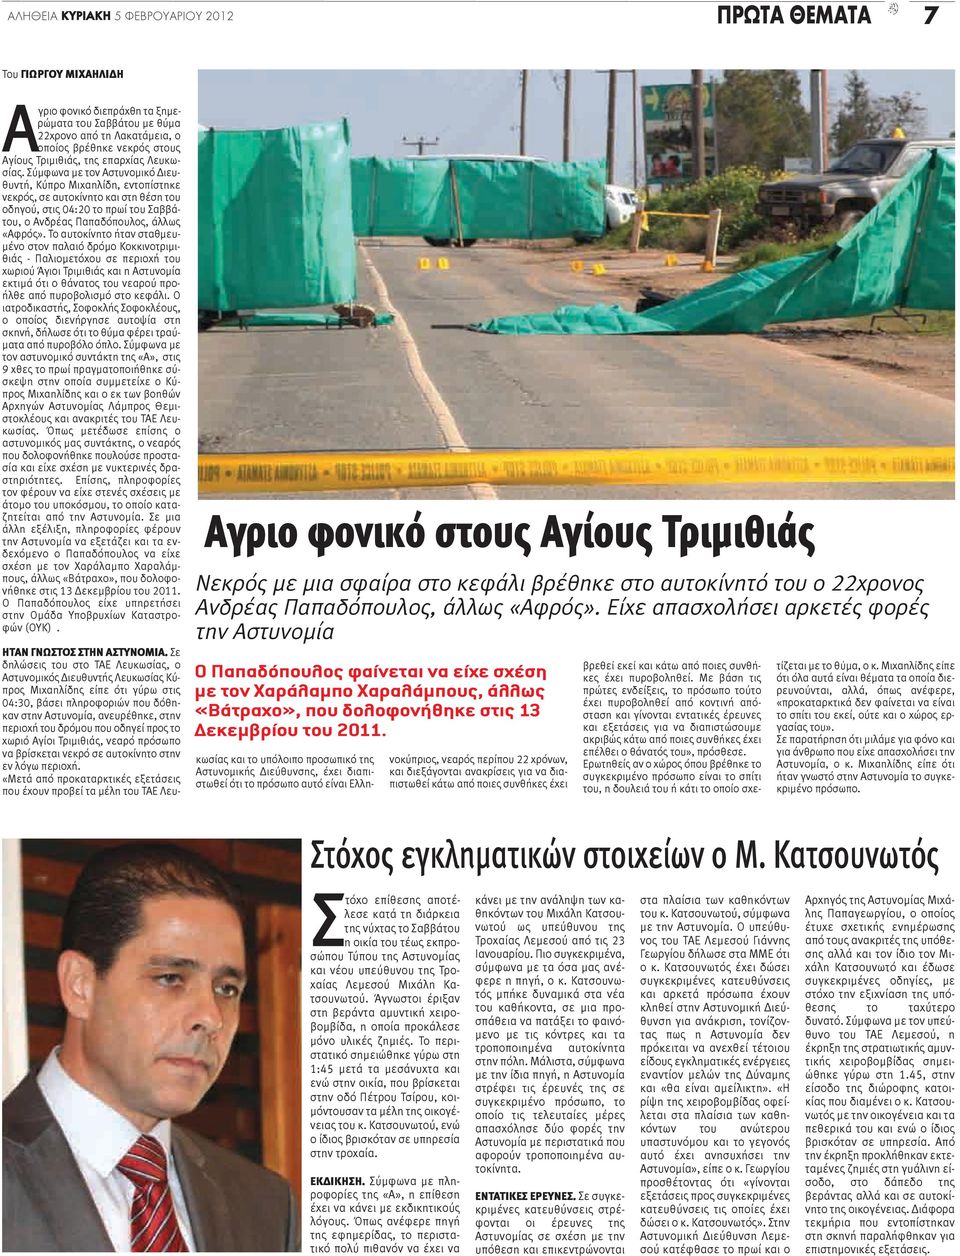 Σύμφωνα με τον Αστυνομικό Διευθυντή, Κύπρο Μιχαηλίδη, εντοπίστηκε νεκρός, σε αυτοκίνητο και στη θέση του οδηγού, στις 04:20 το πρωί του Σαββάτου, ο Ανδρέας Παπαδόπουλος, άλλως «Αφρός».